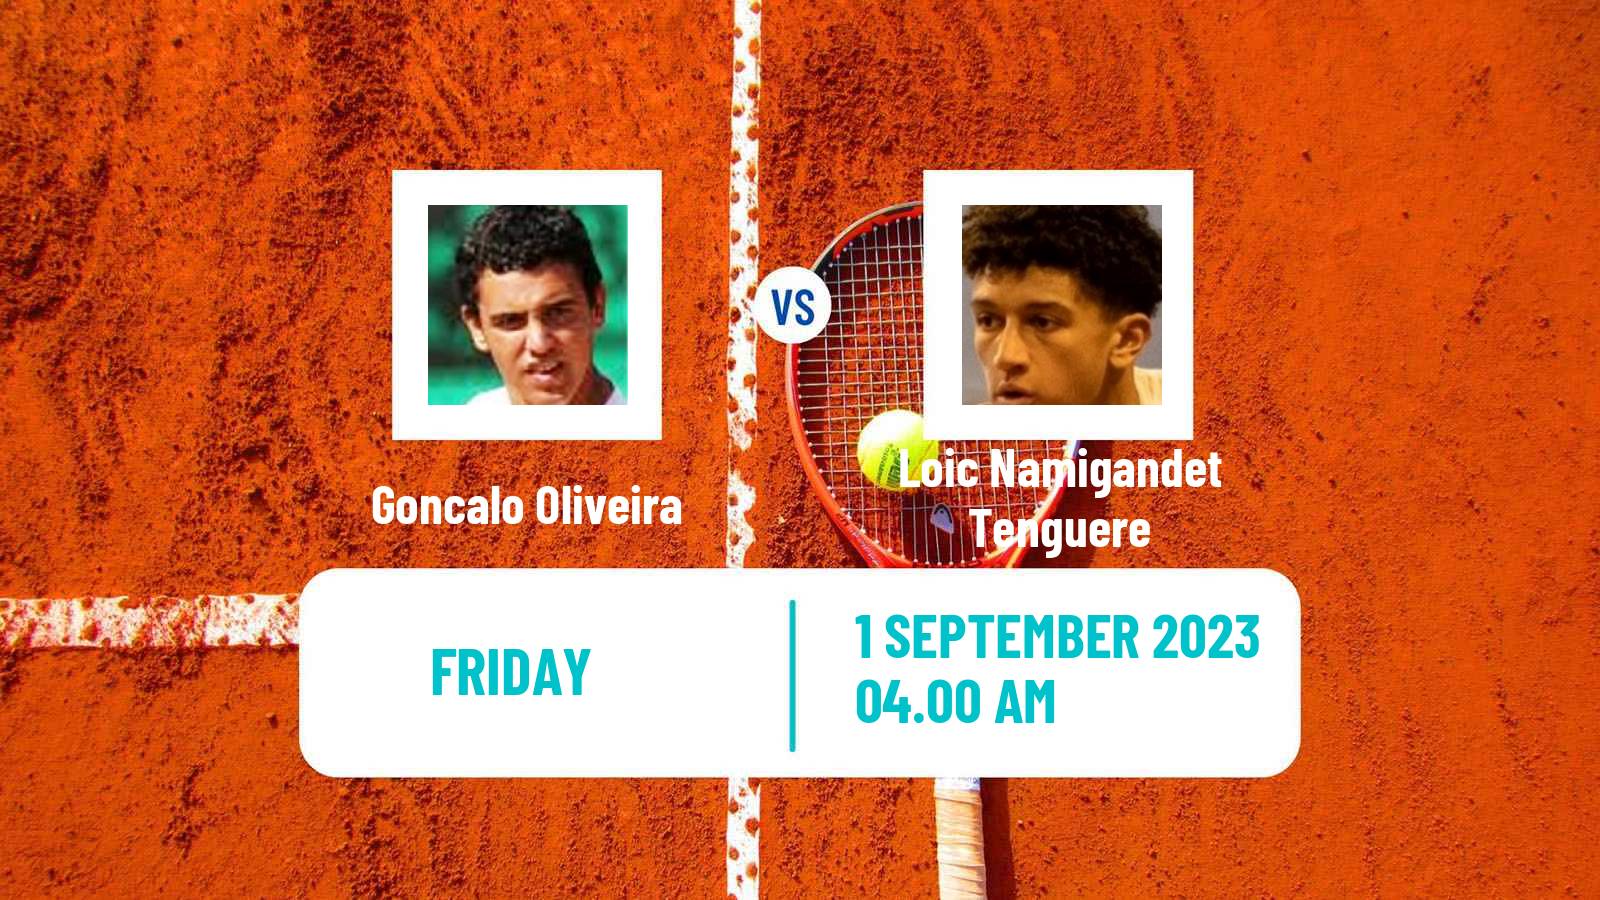 Tennis ITF M25 Idanha A Nova 2 Men Goncalo Oliveira - Loic Namigandet Tenguere